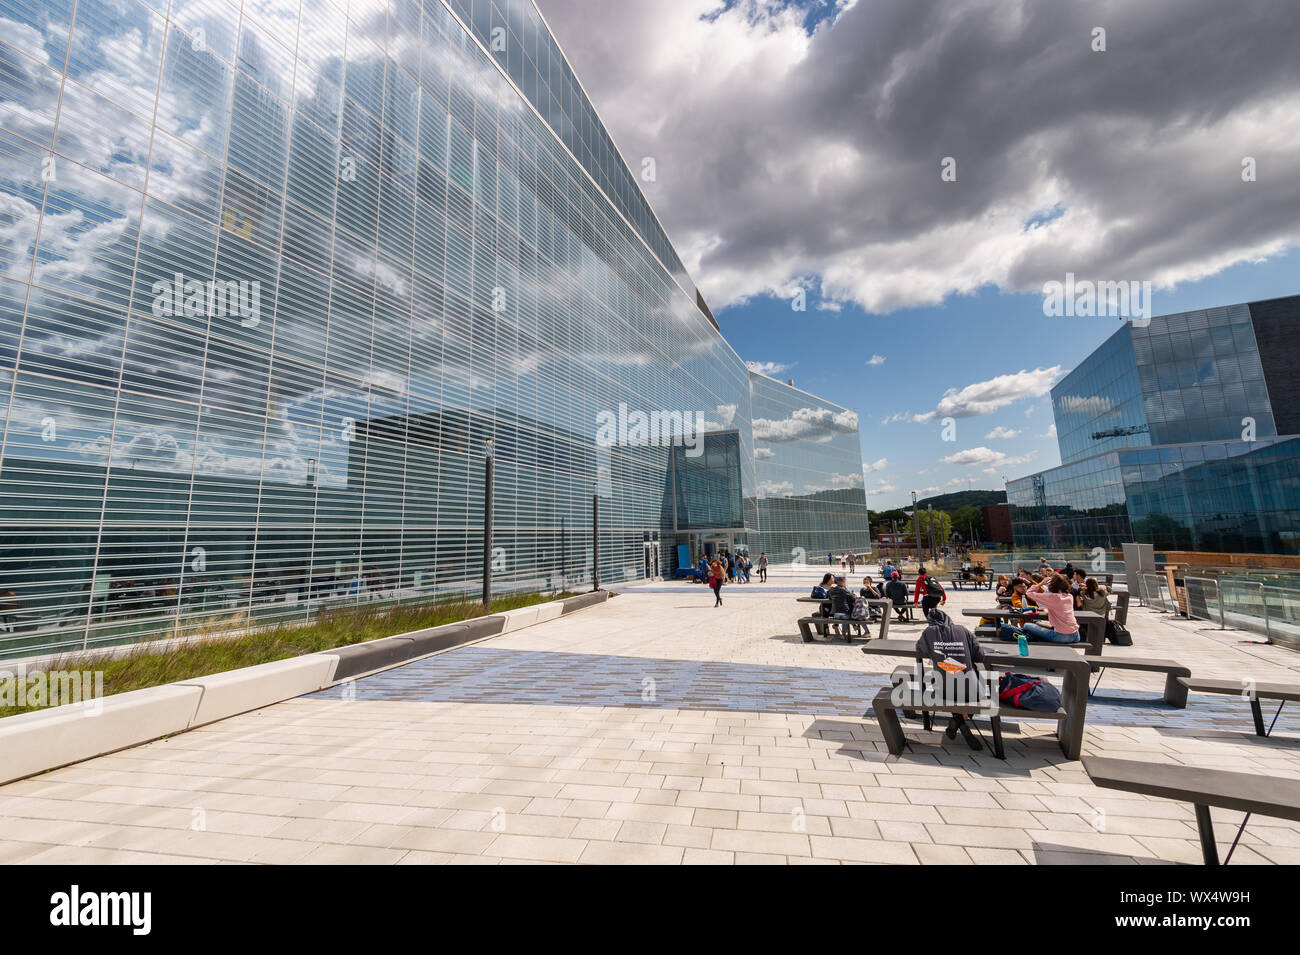 Montreal, CA - 16 Settembre 2019: la nuova scienza complessa costruzione dell'Universite de Montreal sul campus MIL. Foto Stock